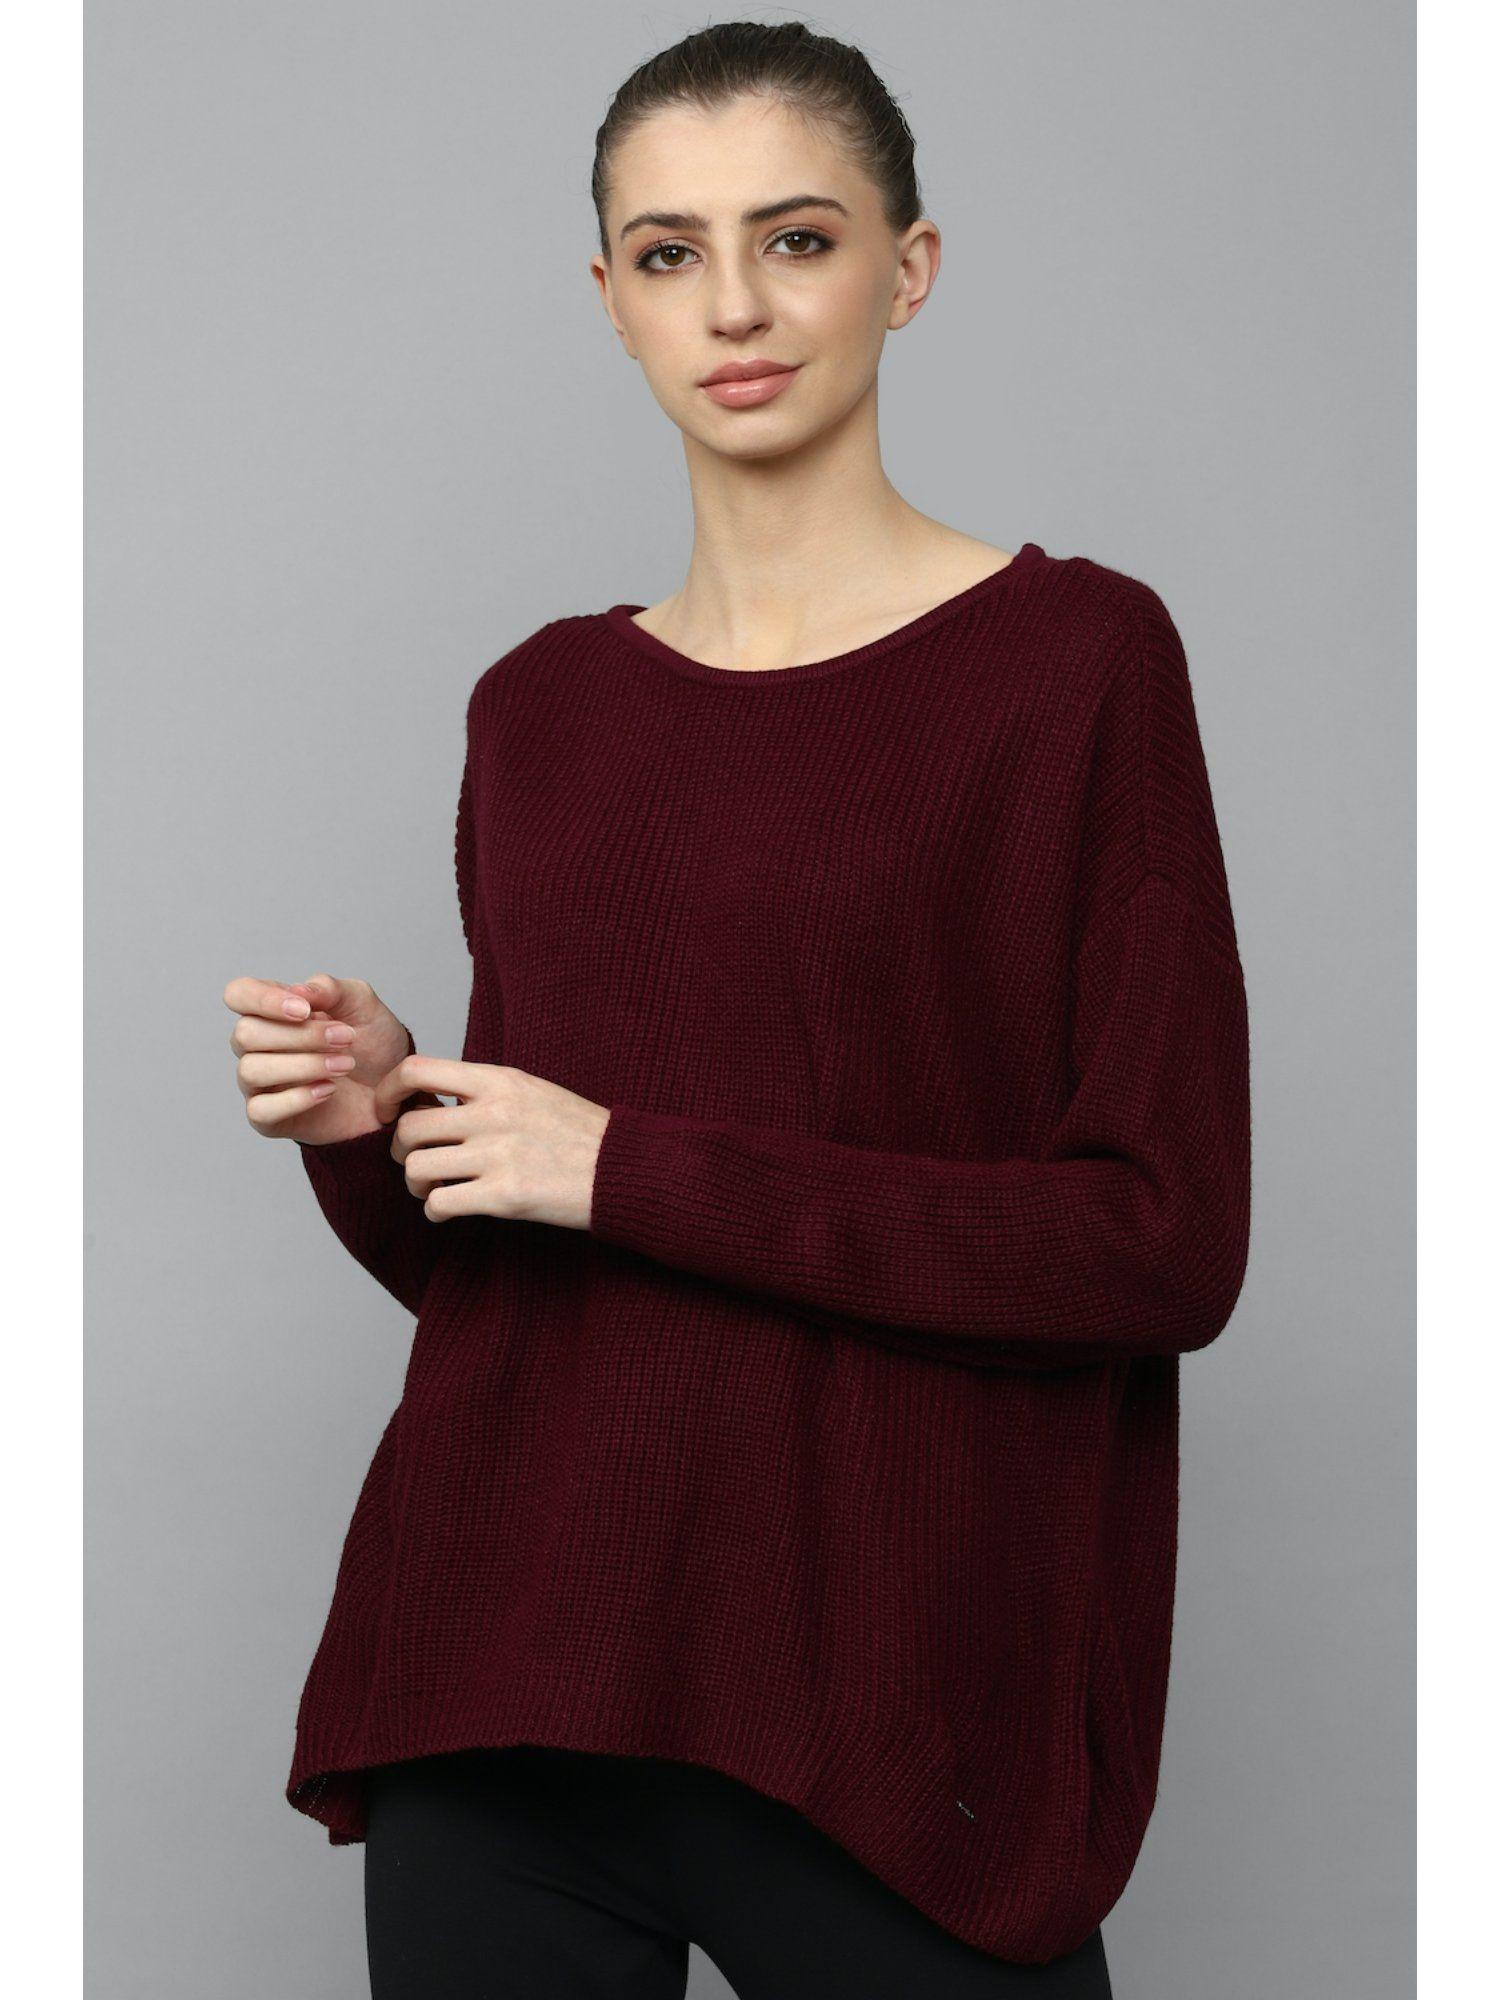 maroon textured sweater